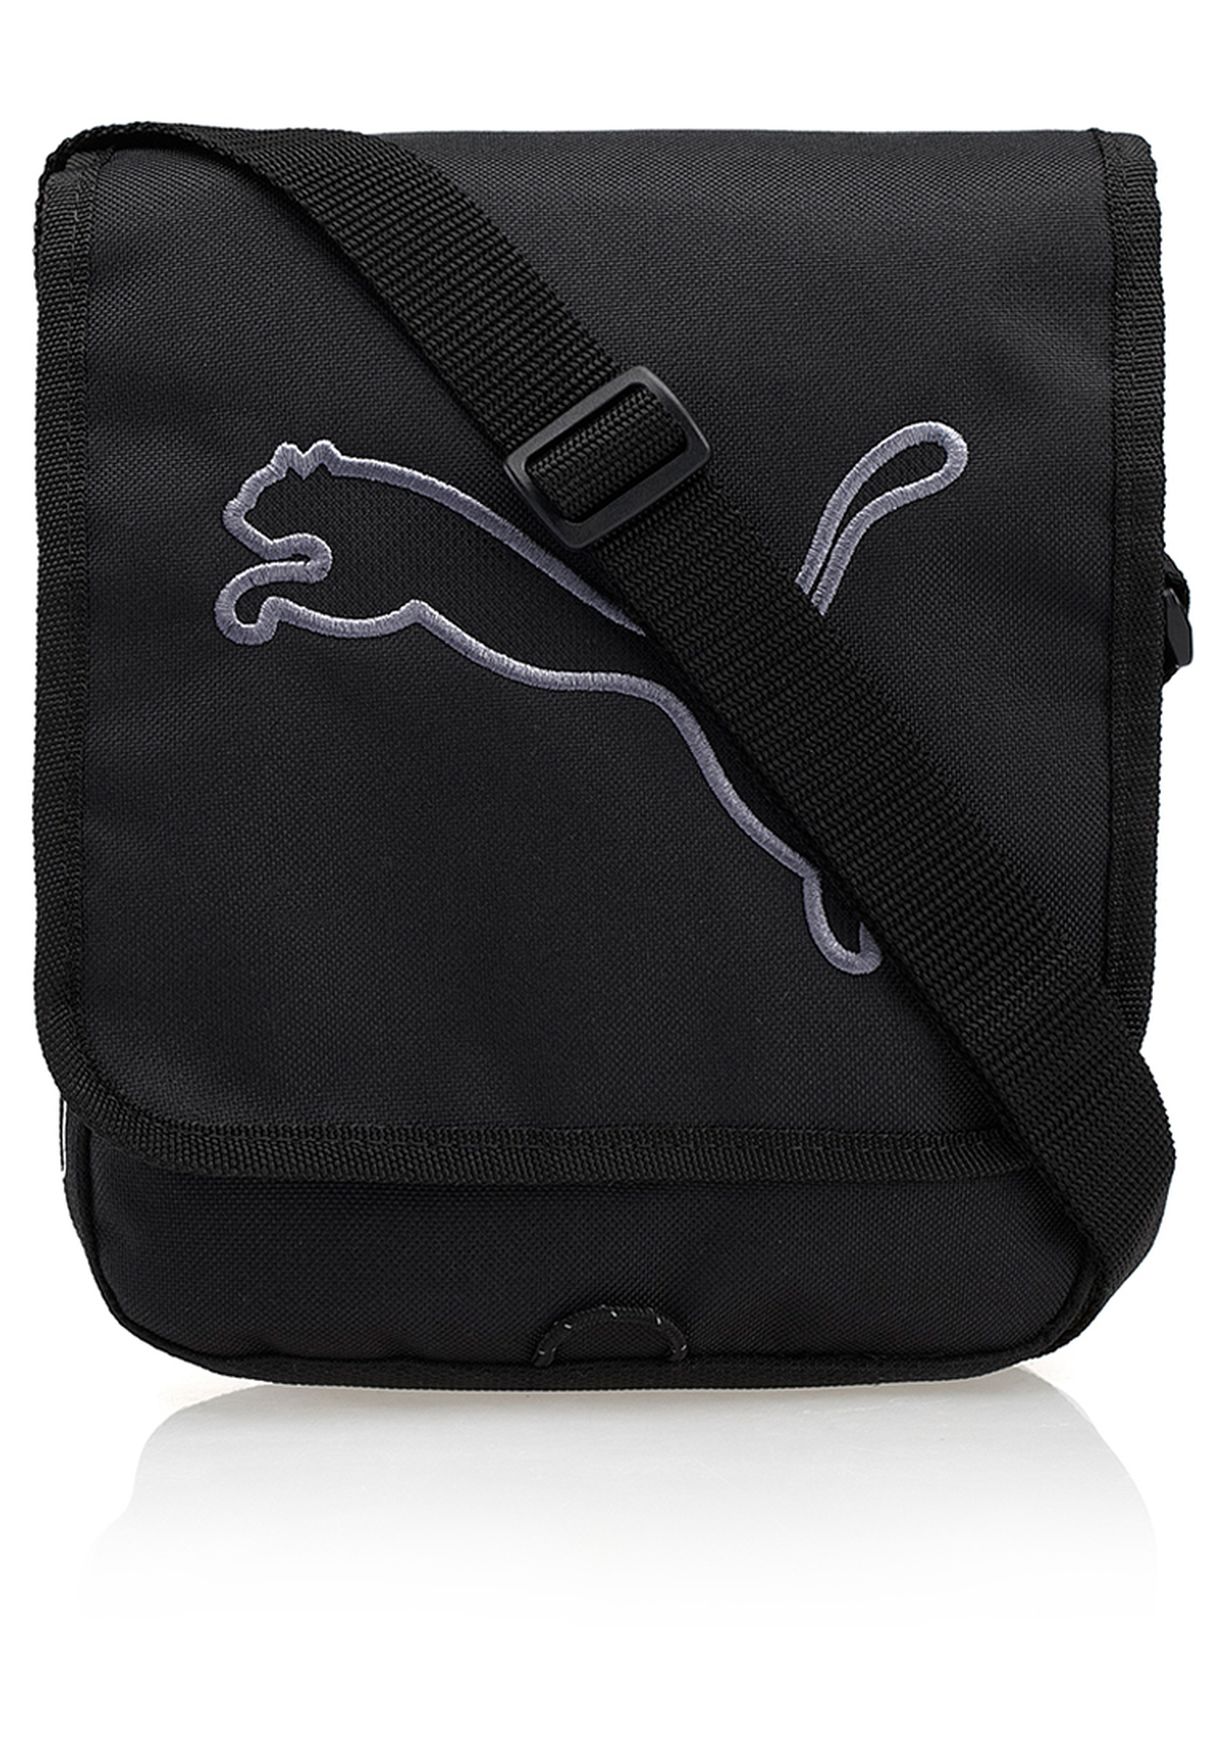 puma big cat portable bag